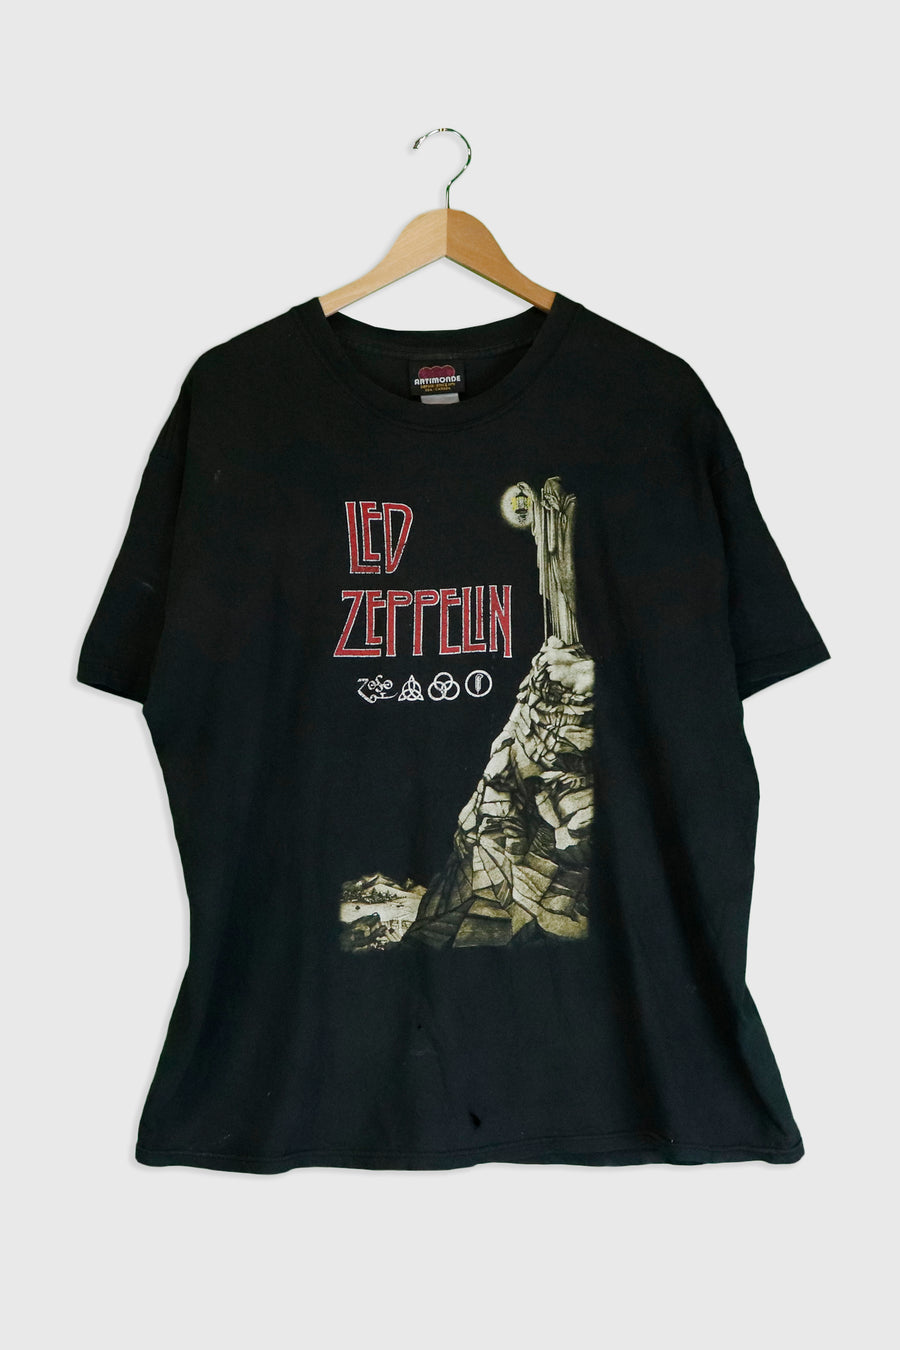 Vintage Led Zeppelin Hermit T Shirt Sz XL